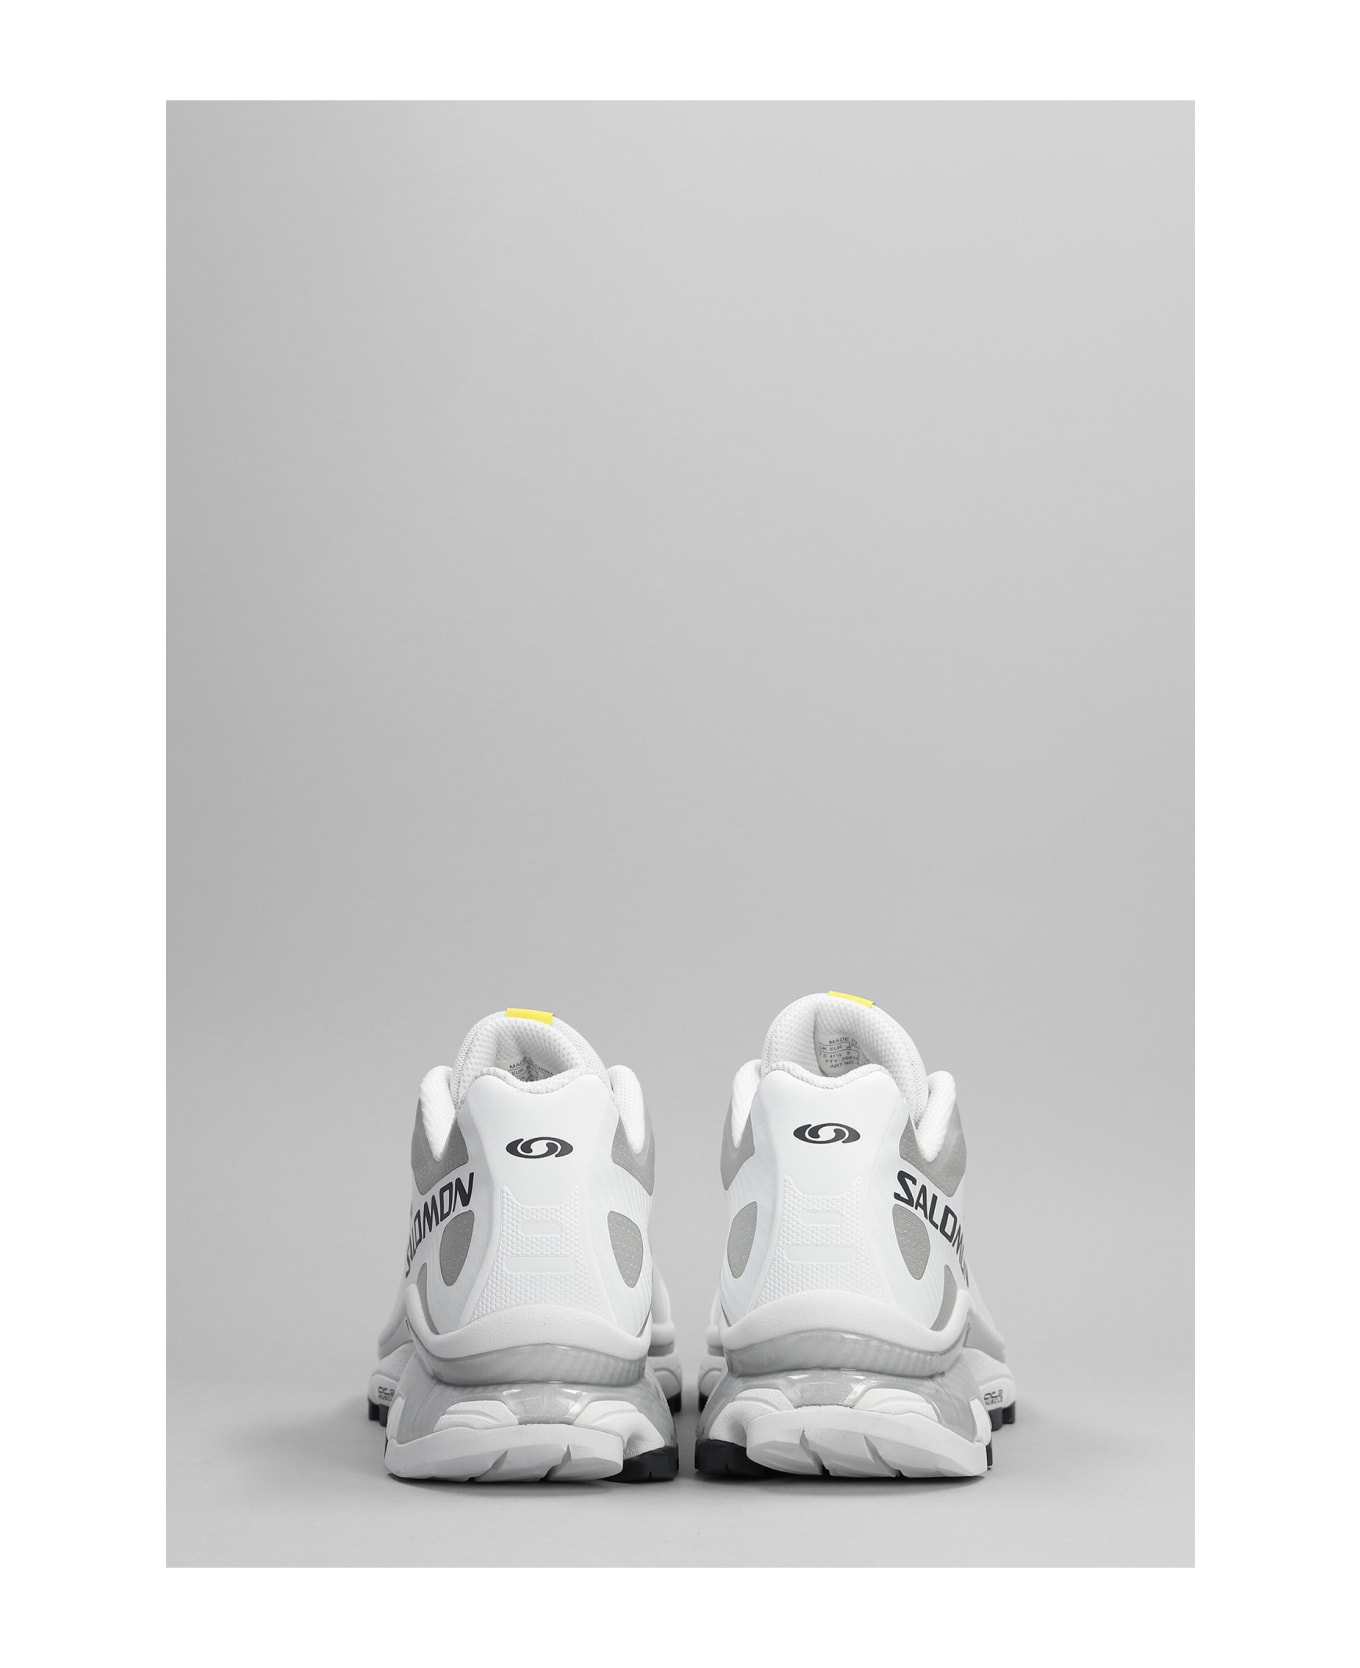 Salomon Xt-4 Og Sneakers In White Synthetic Fibers - White/ebony/lunar rock スニーカー